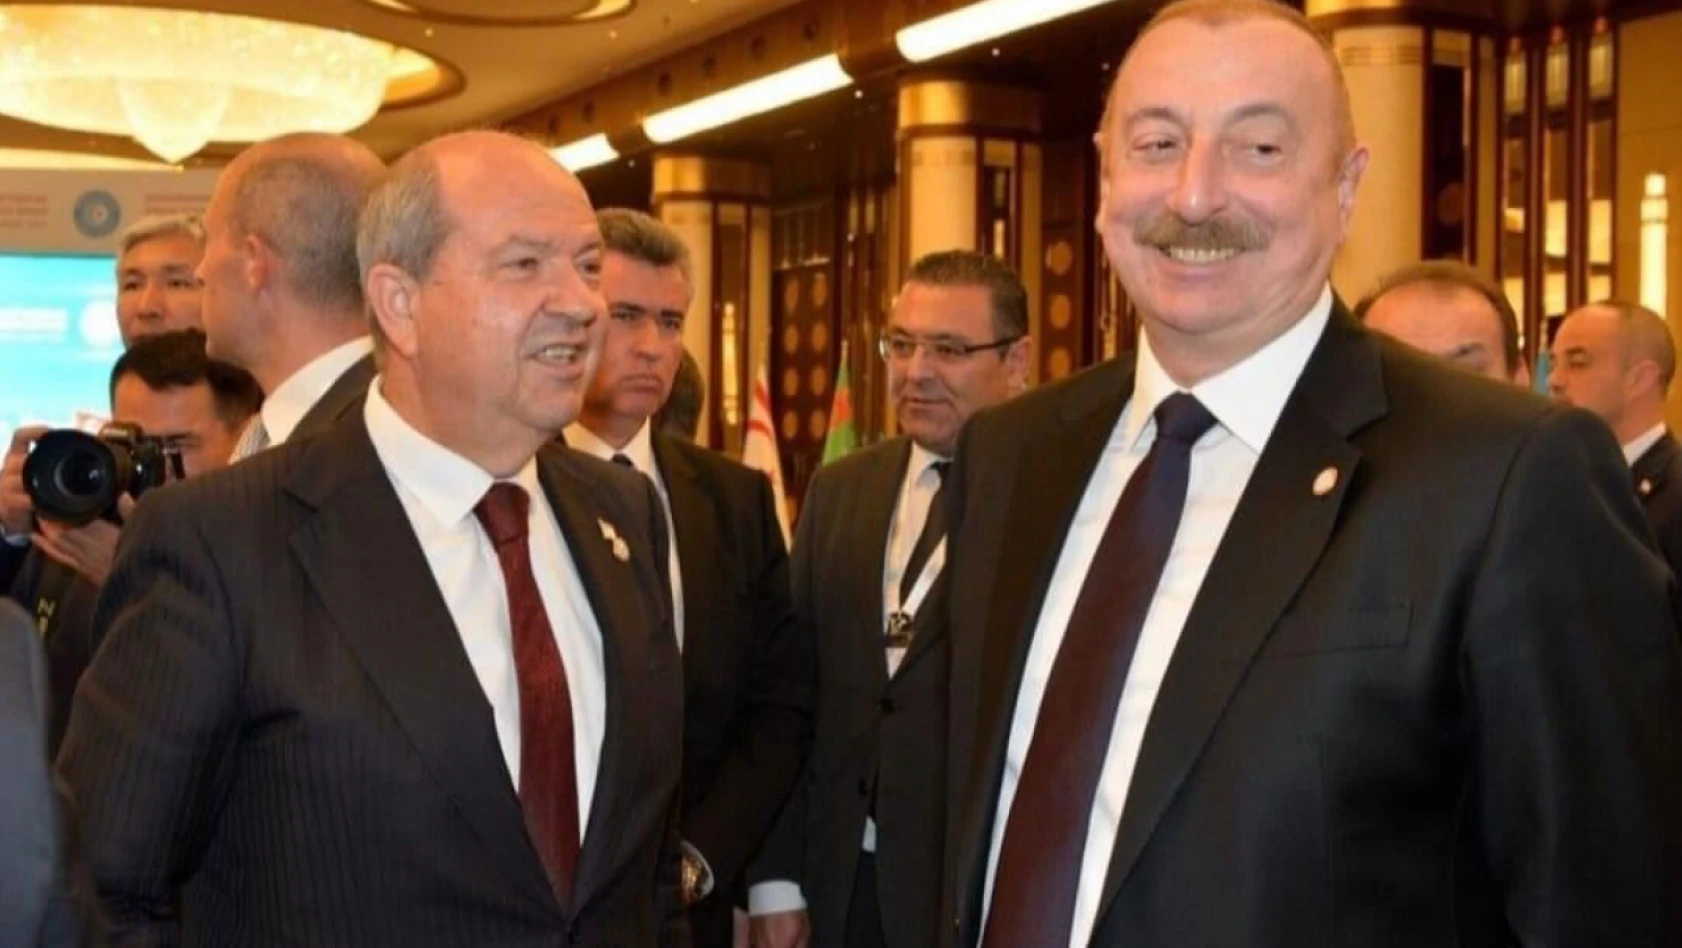 KKTC, Aliyev'in gücünü arkasına aldı